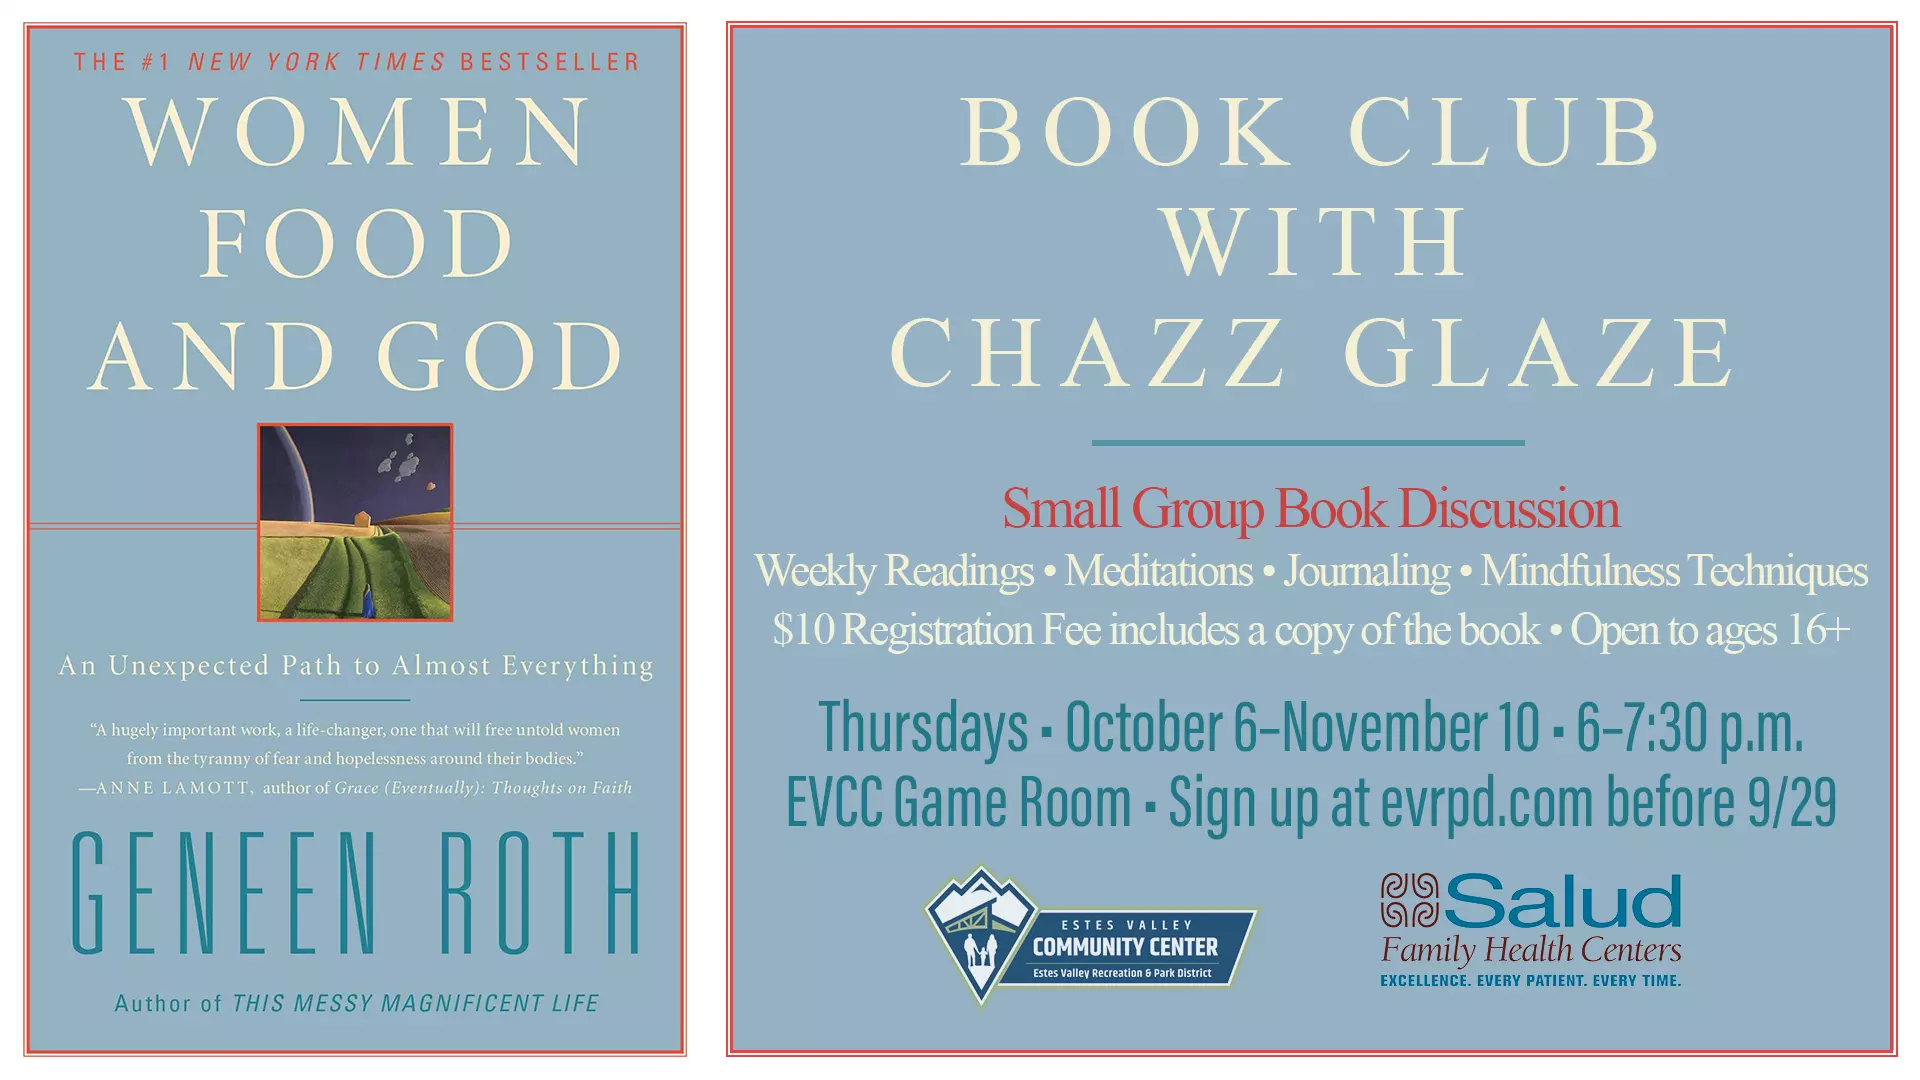 Book Club with Chazz Glaze